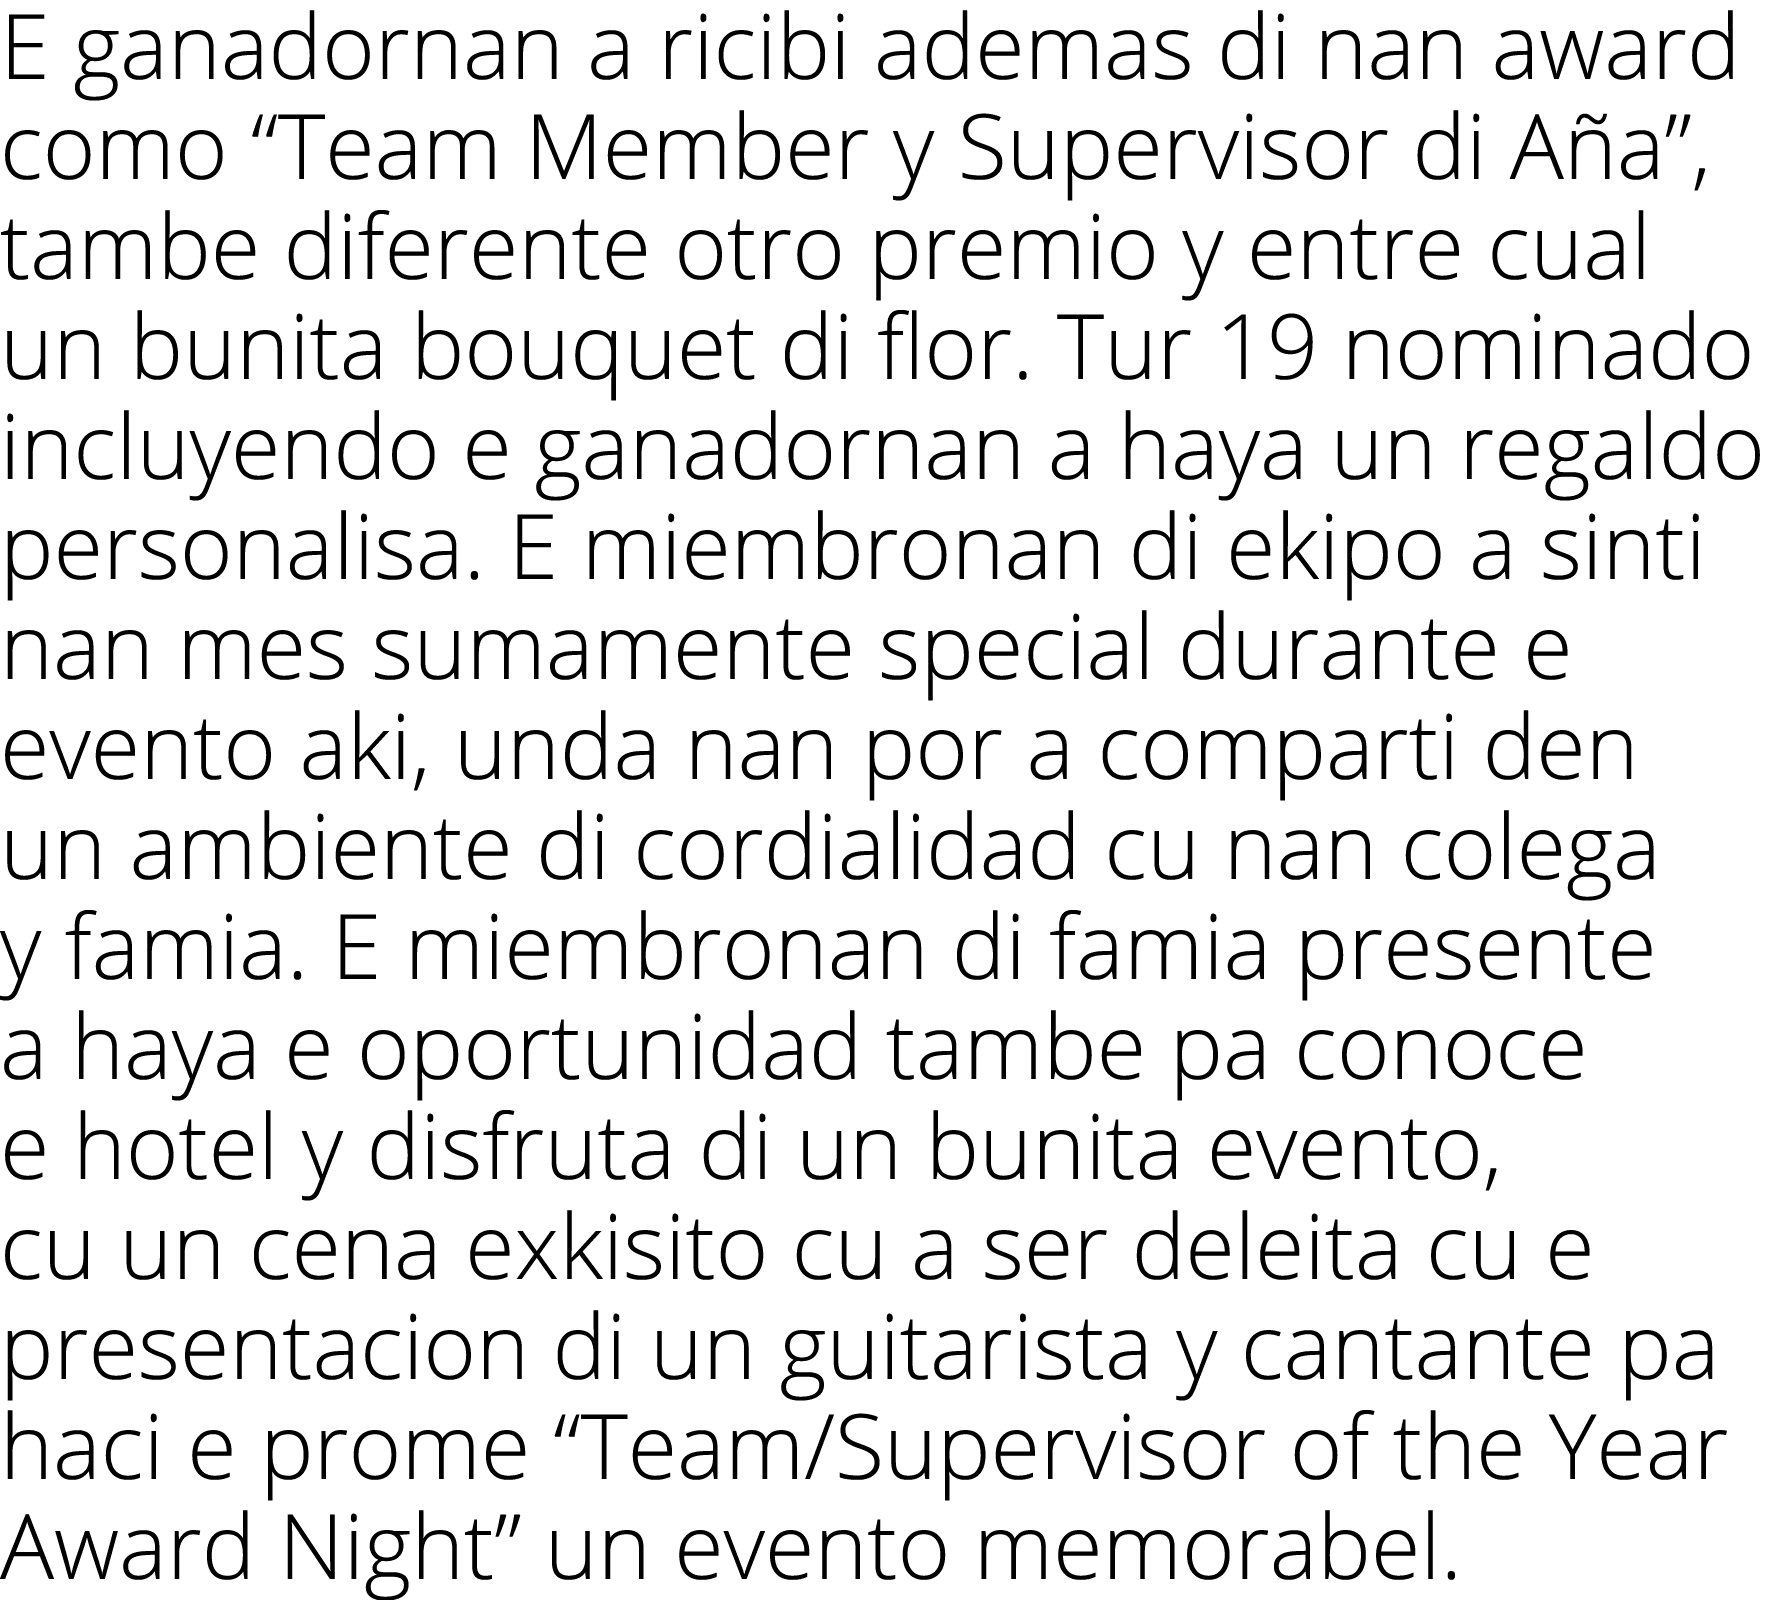 E ganadornan a ricibi ademas di nan award como “Team Member y Supervisor di A a”, tambe diferente otro premio y entre...